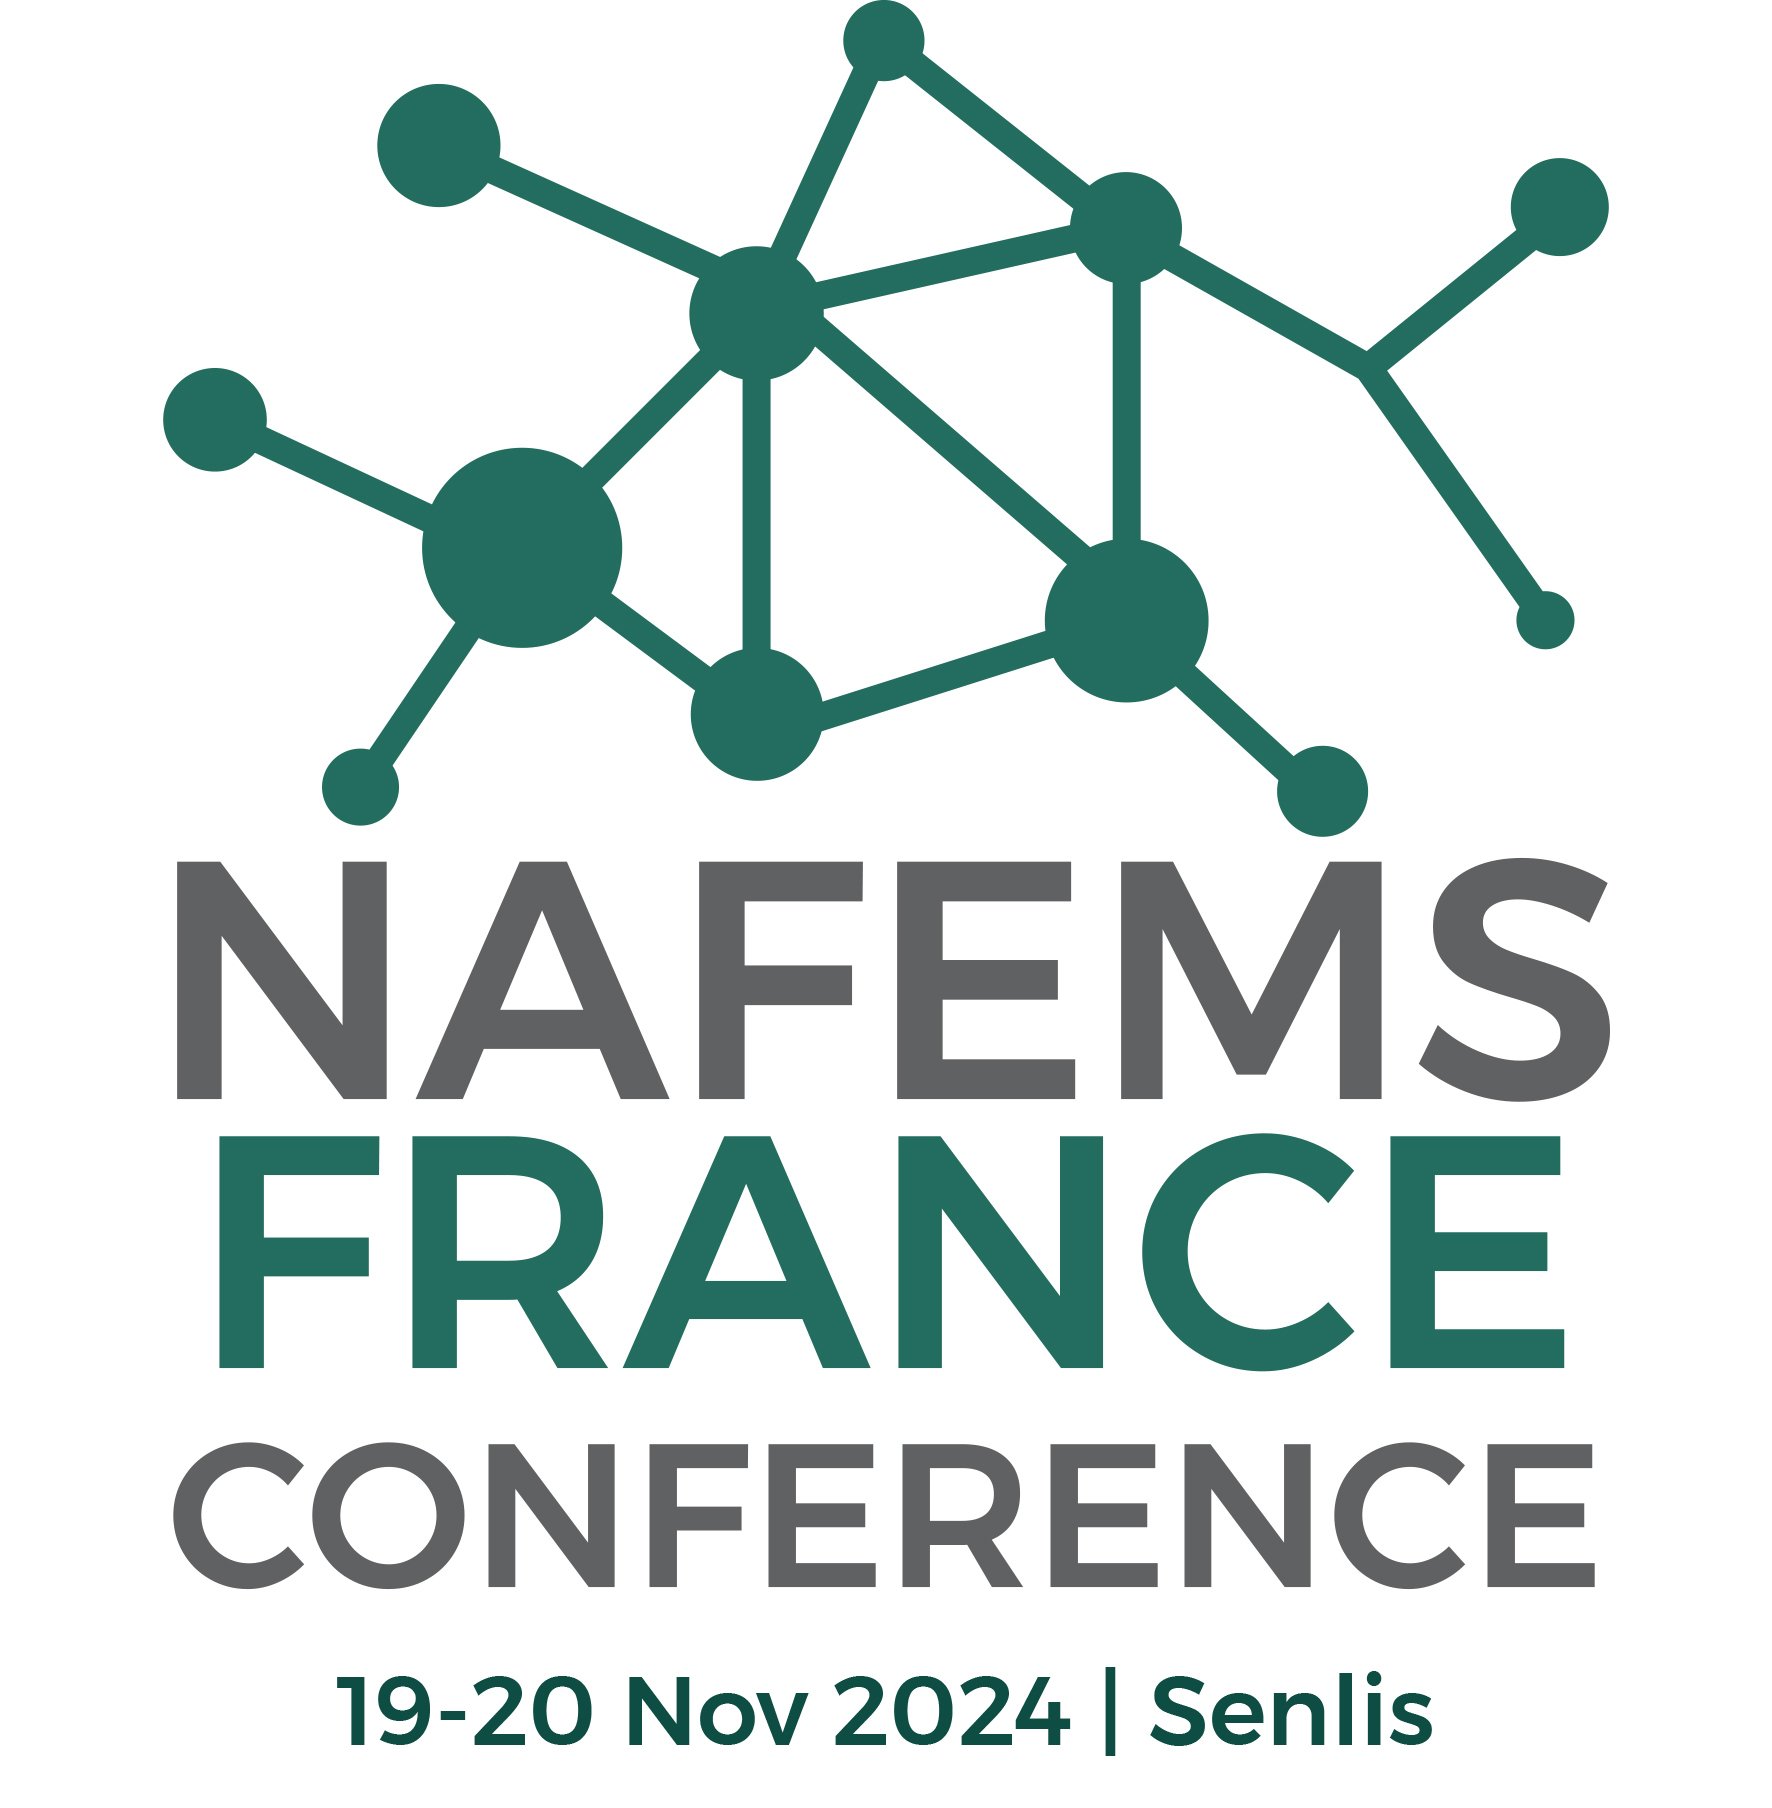 NAFEMS France Conference 2024